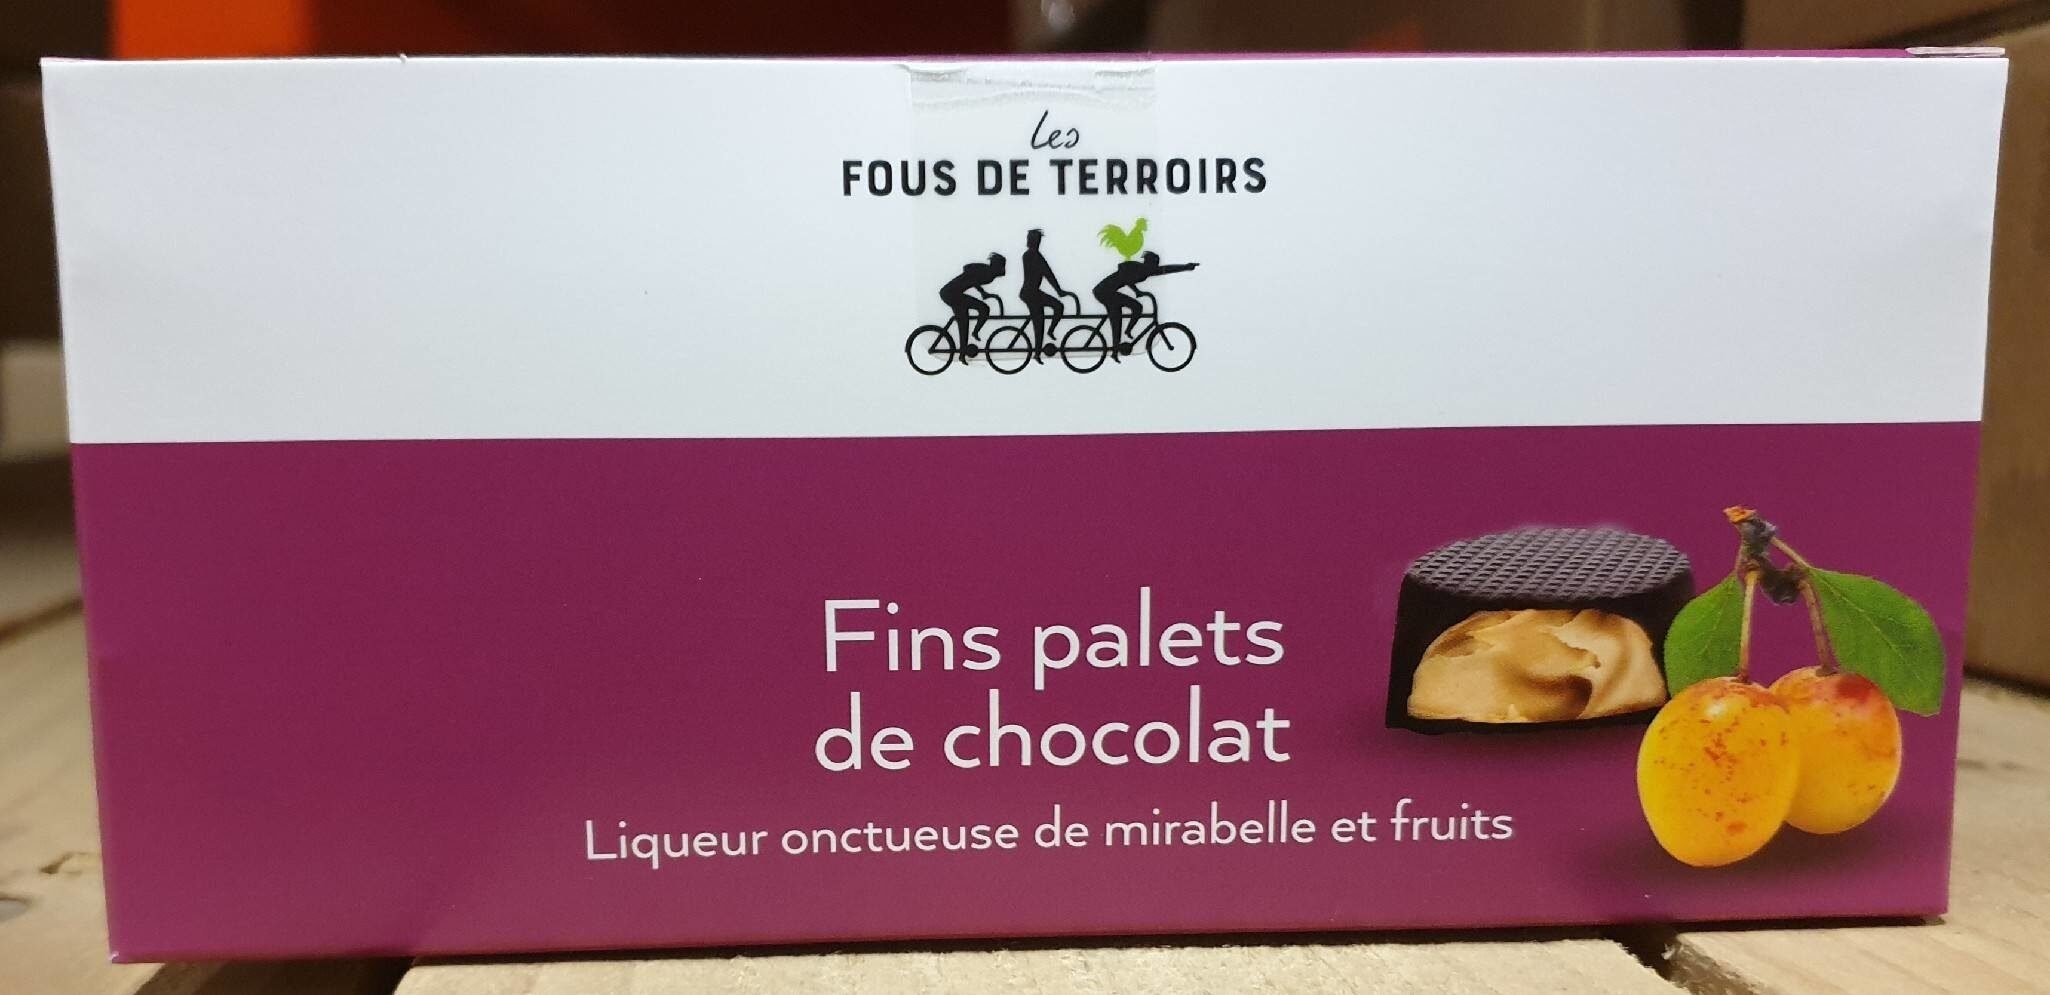 Fin palets de chocolat - Product - fr